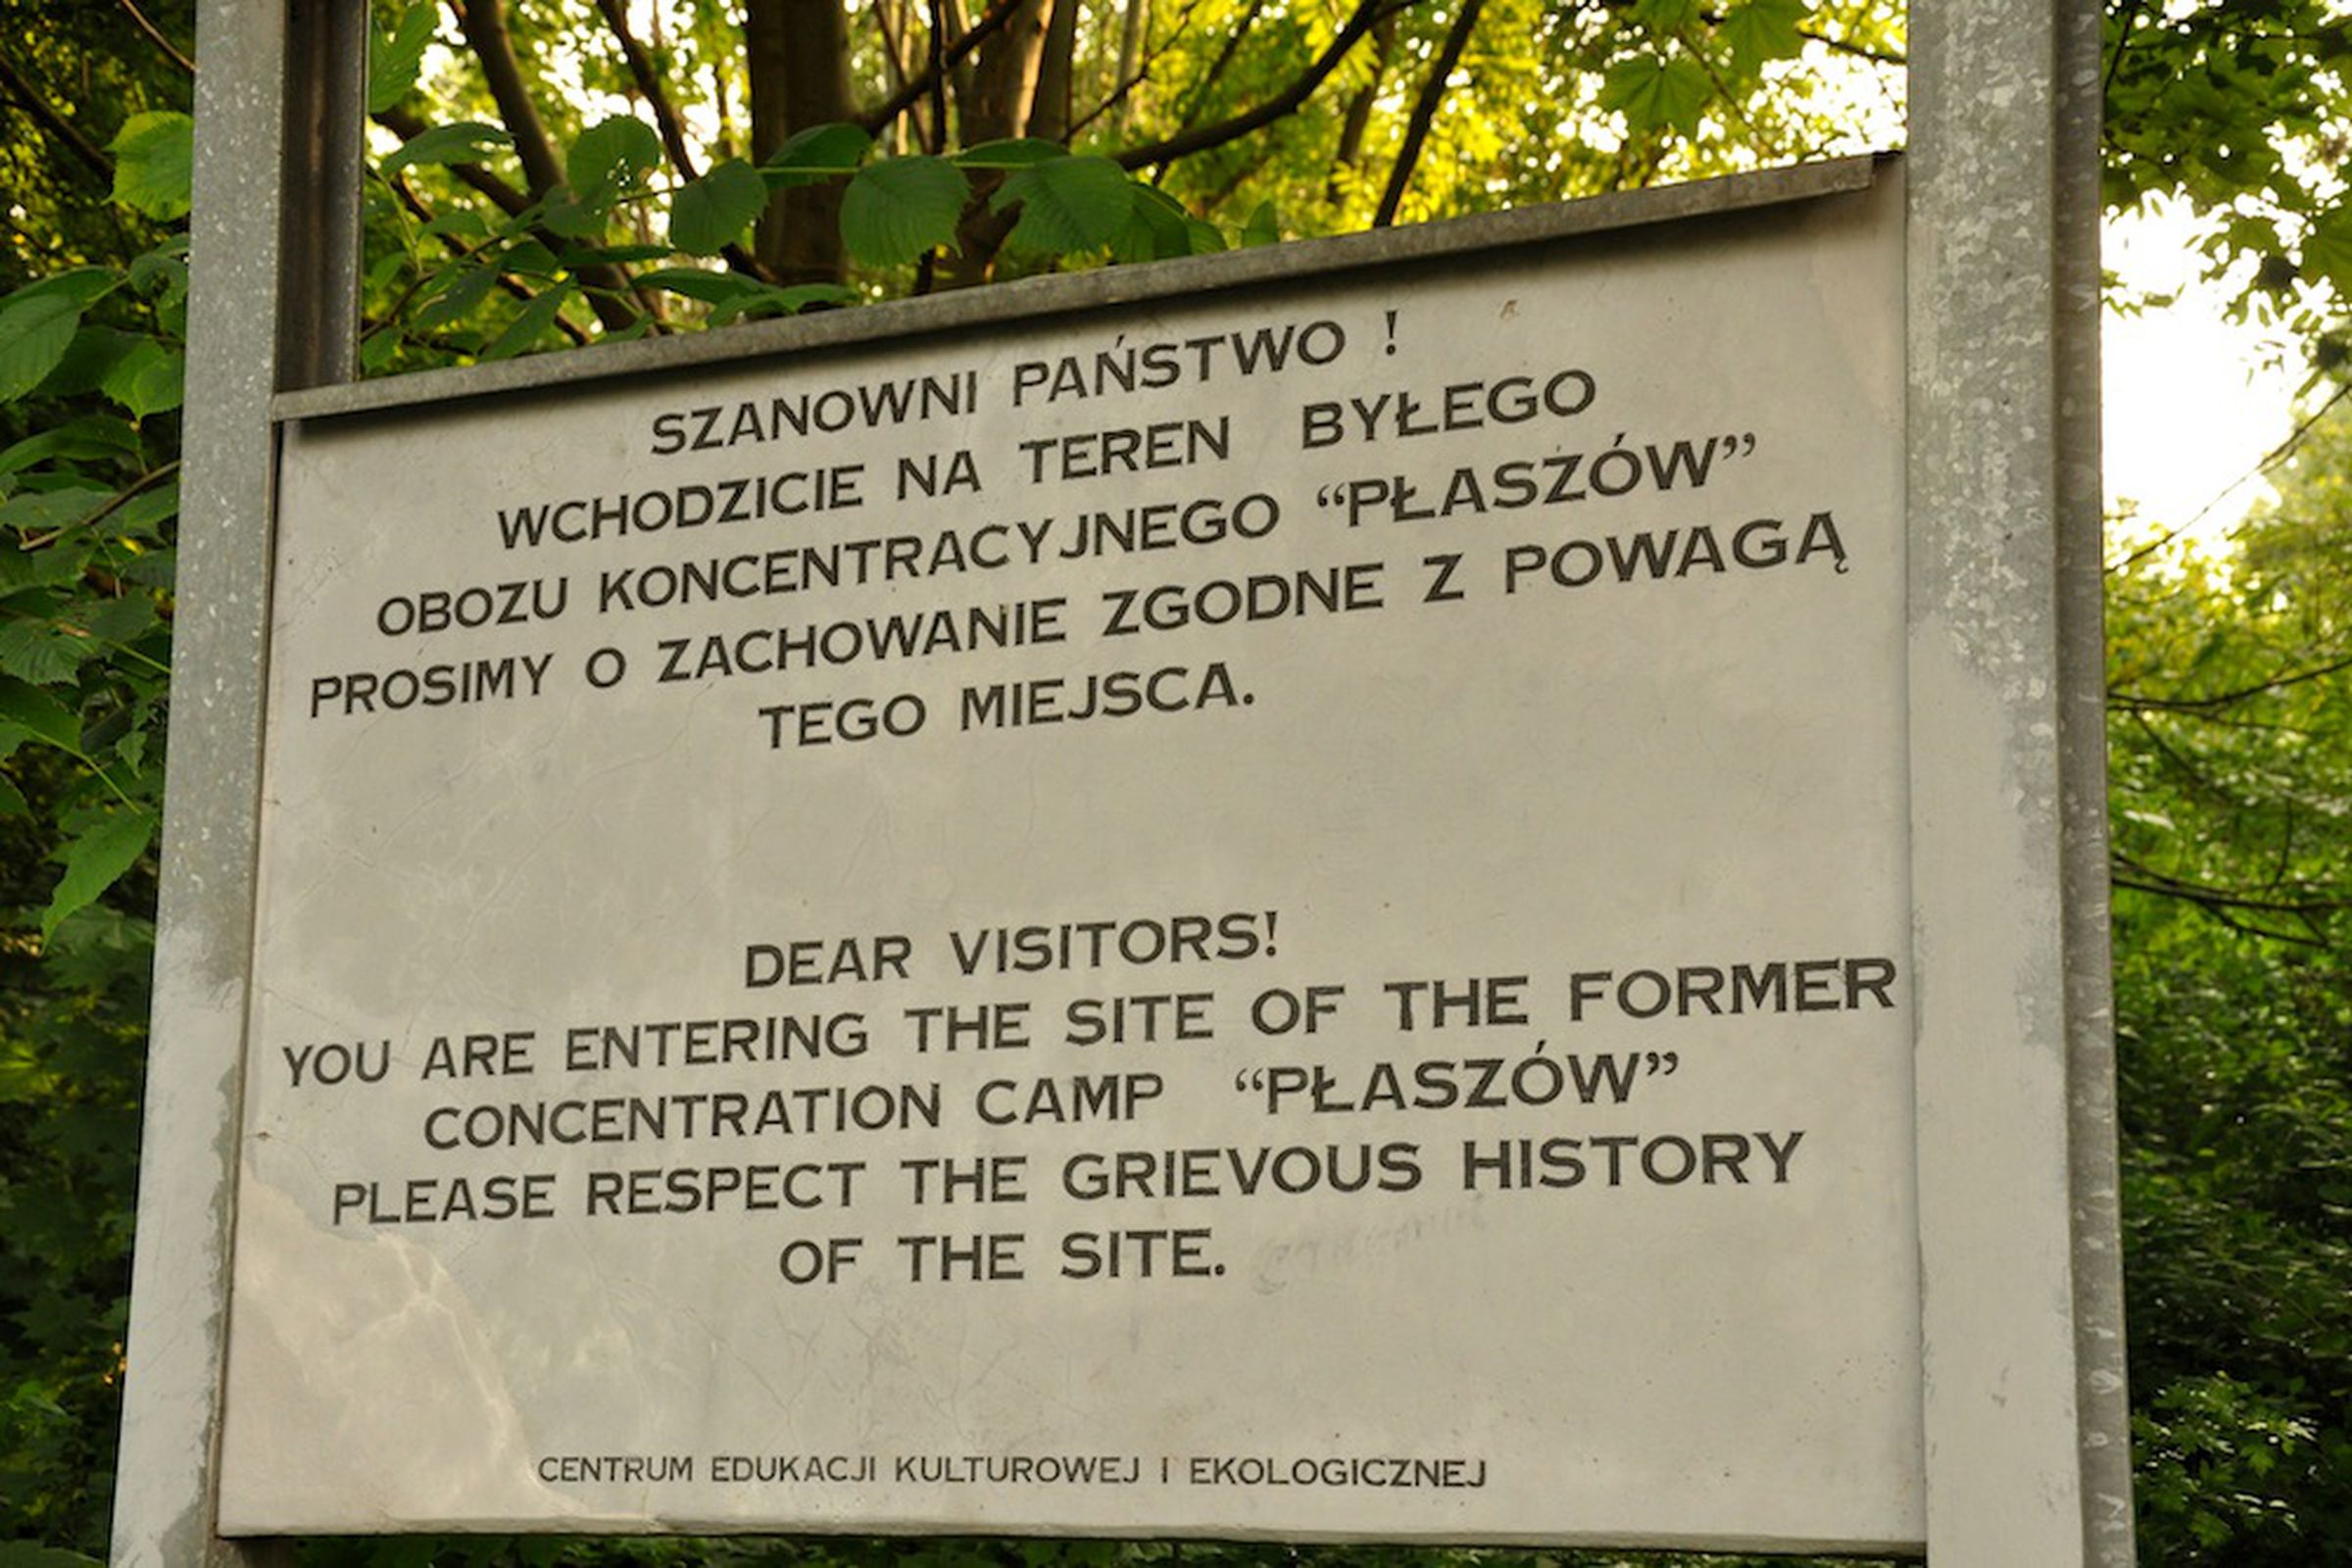 Plaszow concentration camp